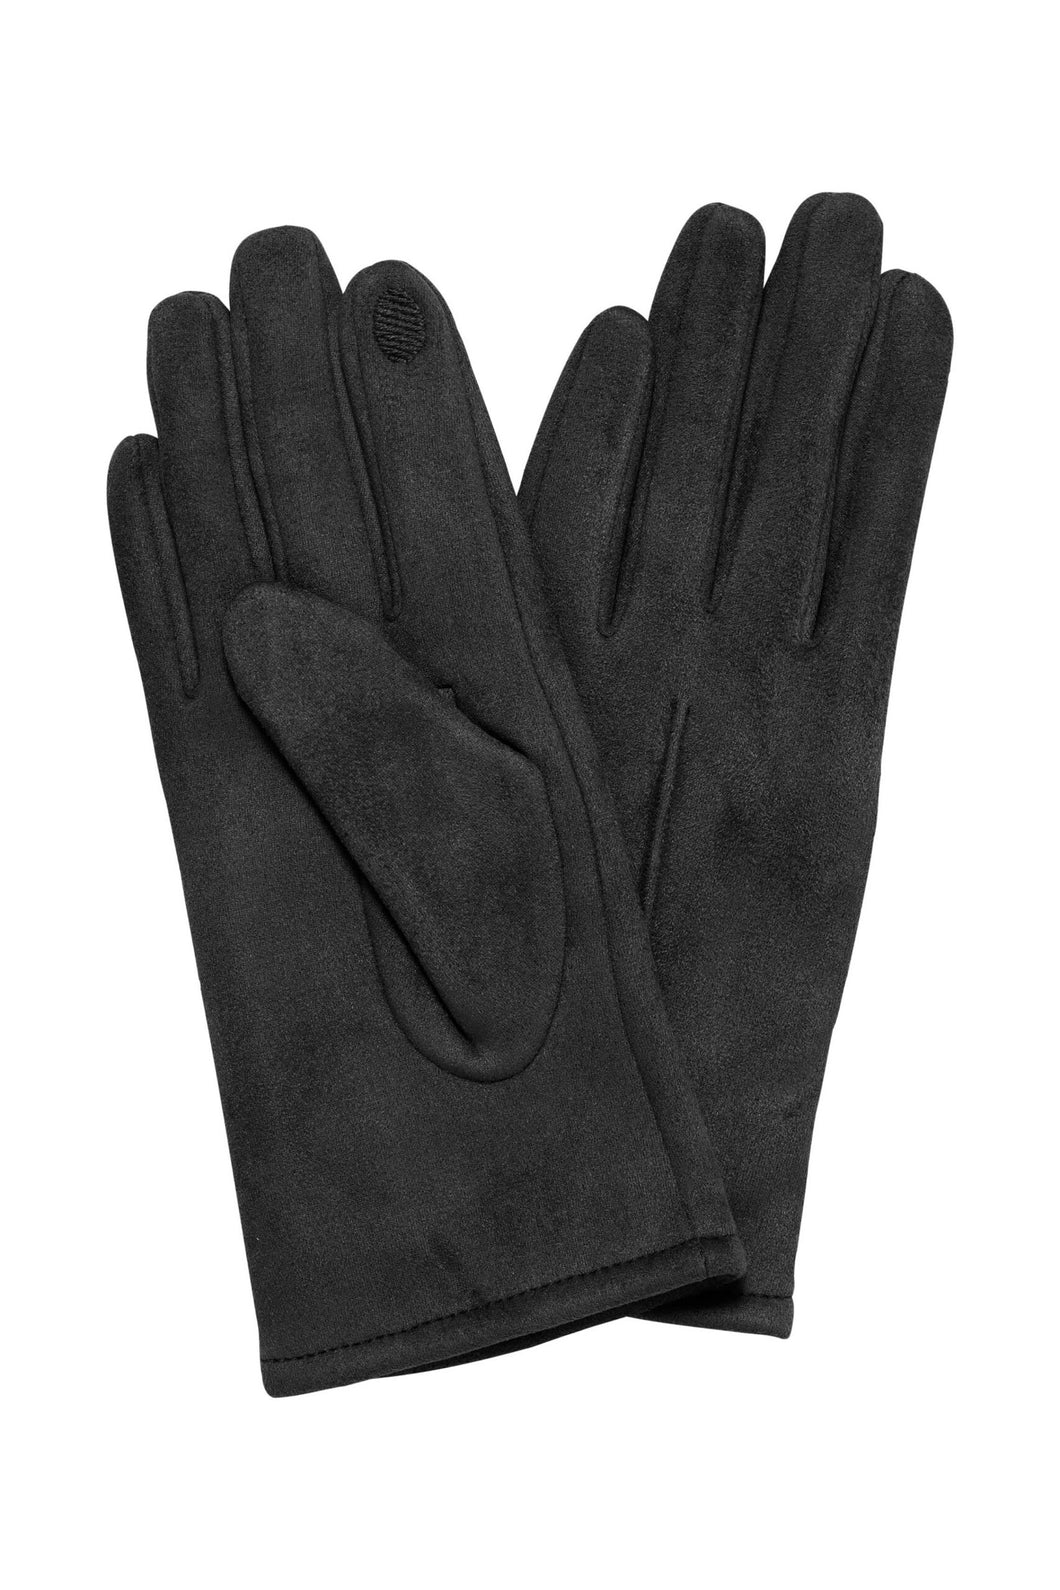 Ichi Pammi Gloves ~ Black